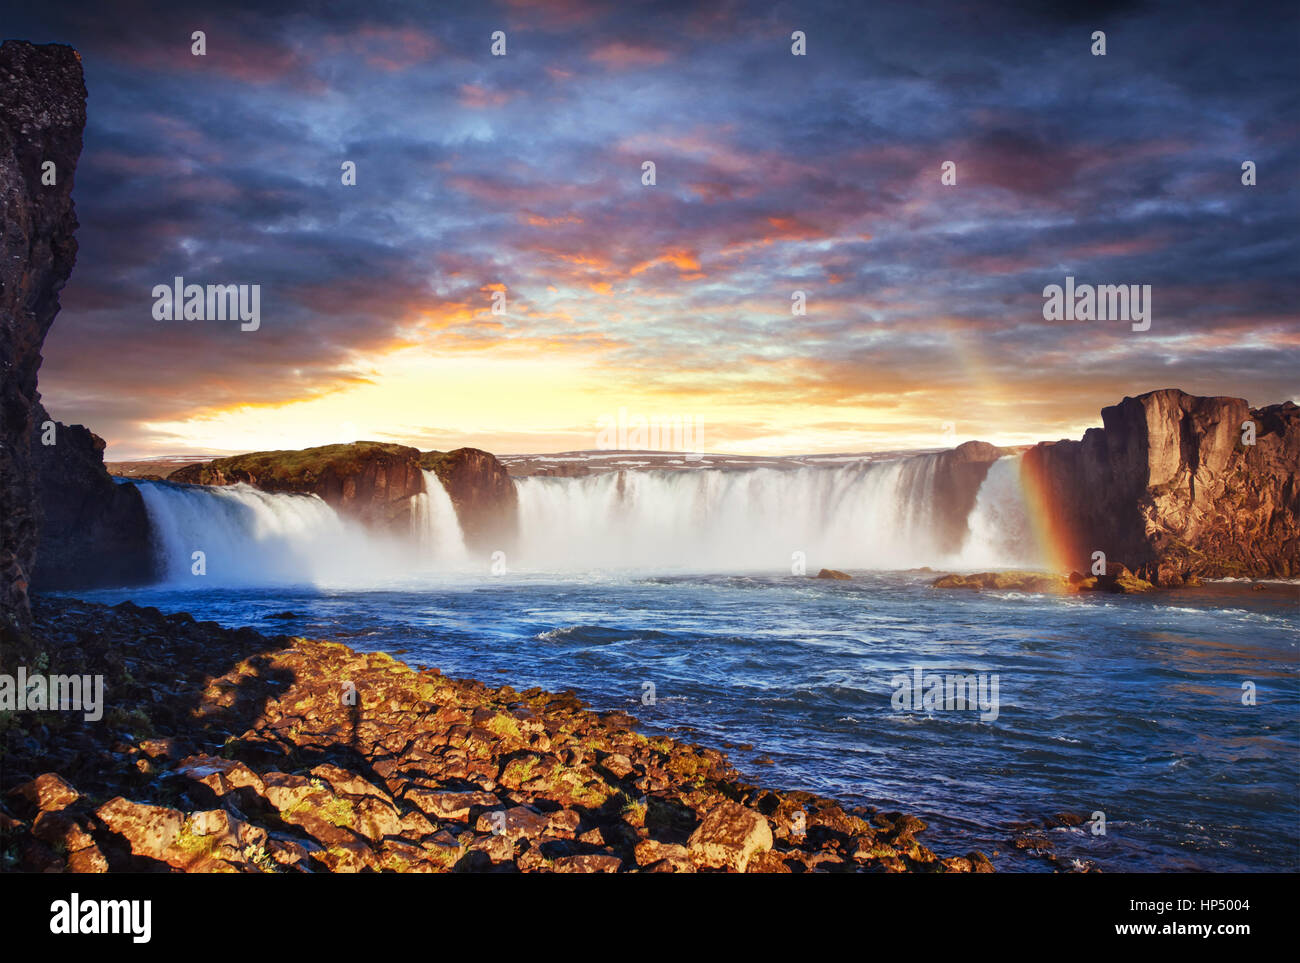 Godafoss waterfall at sunset. Beauty world. Iceland, Europe Stock Photo